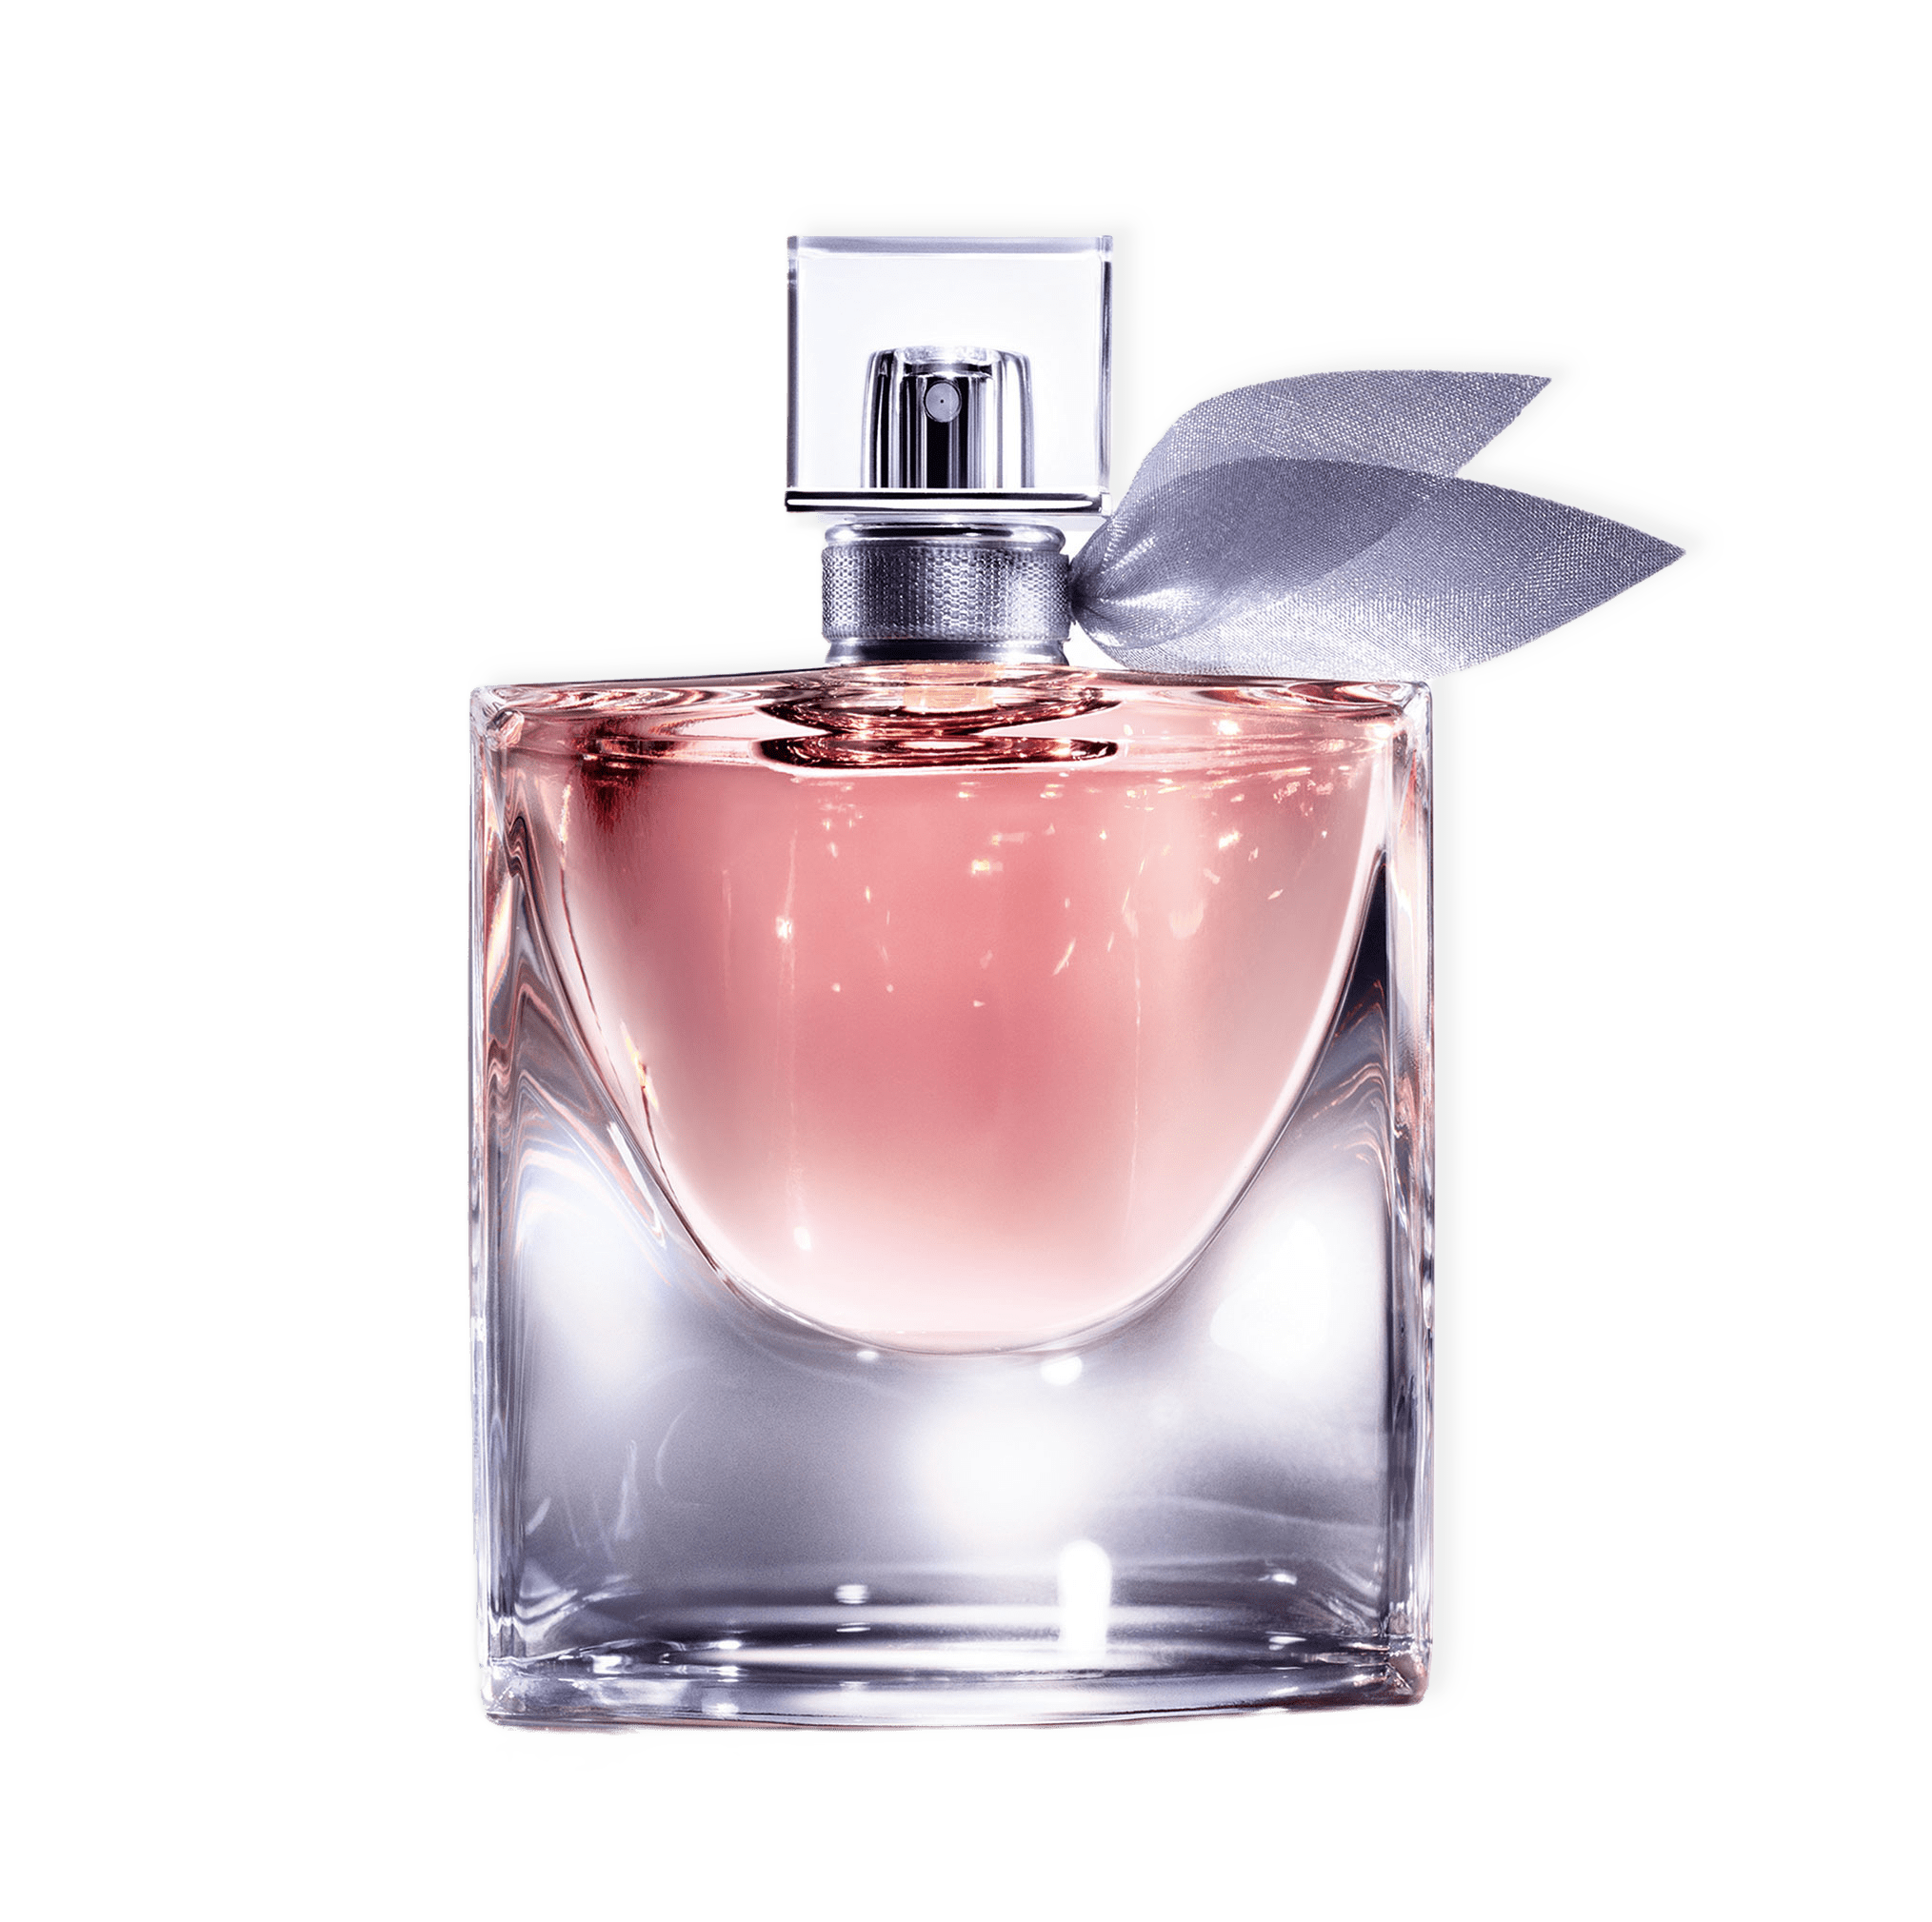 La Vie Est Belle Eau de Parfum från Lancôme